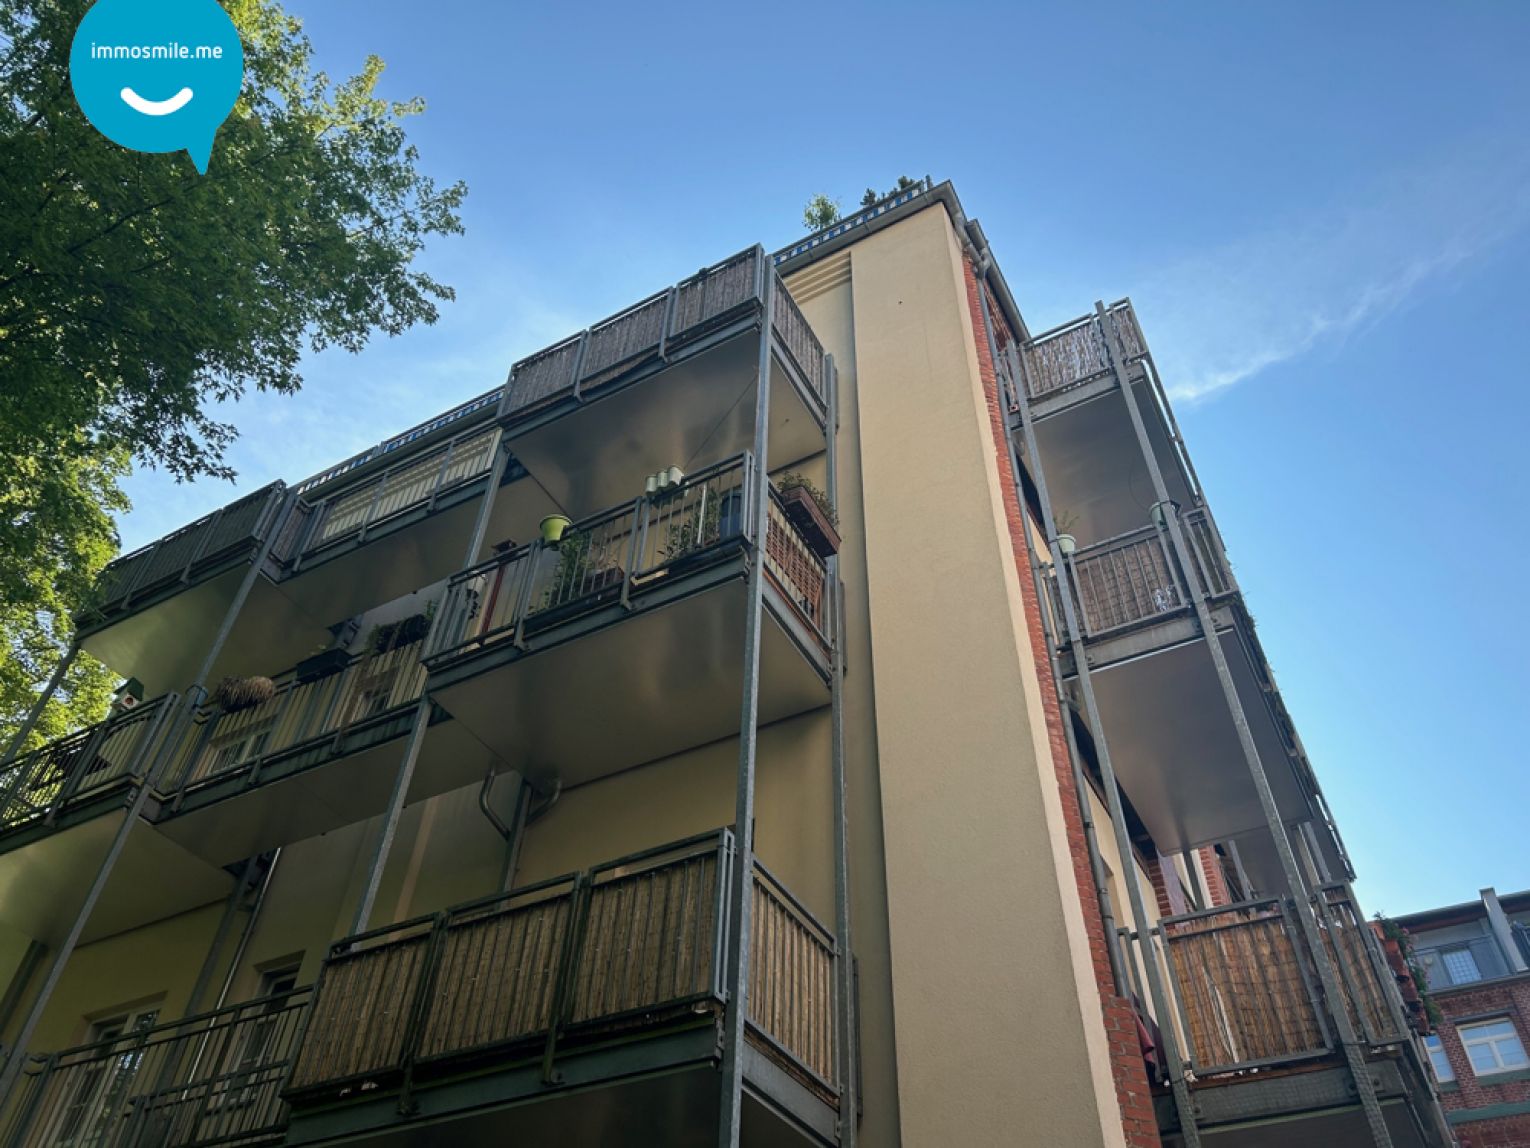 Eigentumswohnung • vermietet • 2 Balkone • Beckerhof • 3-Zimmer • zum Kauf